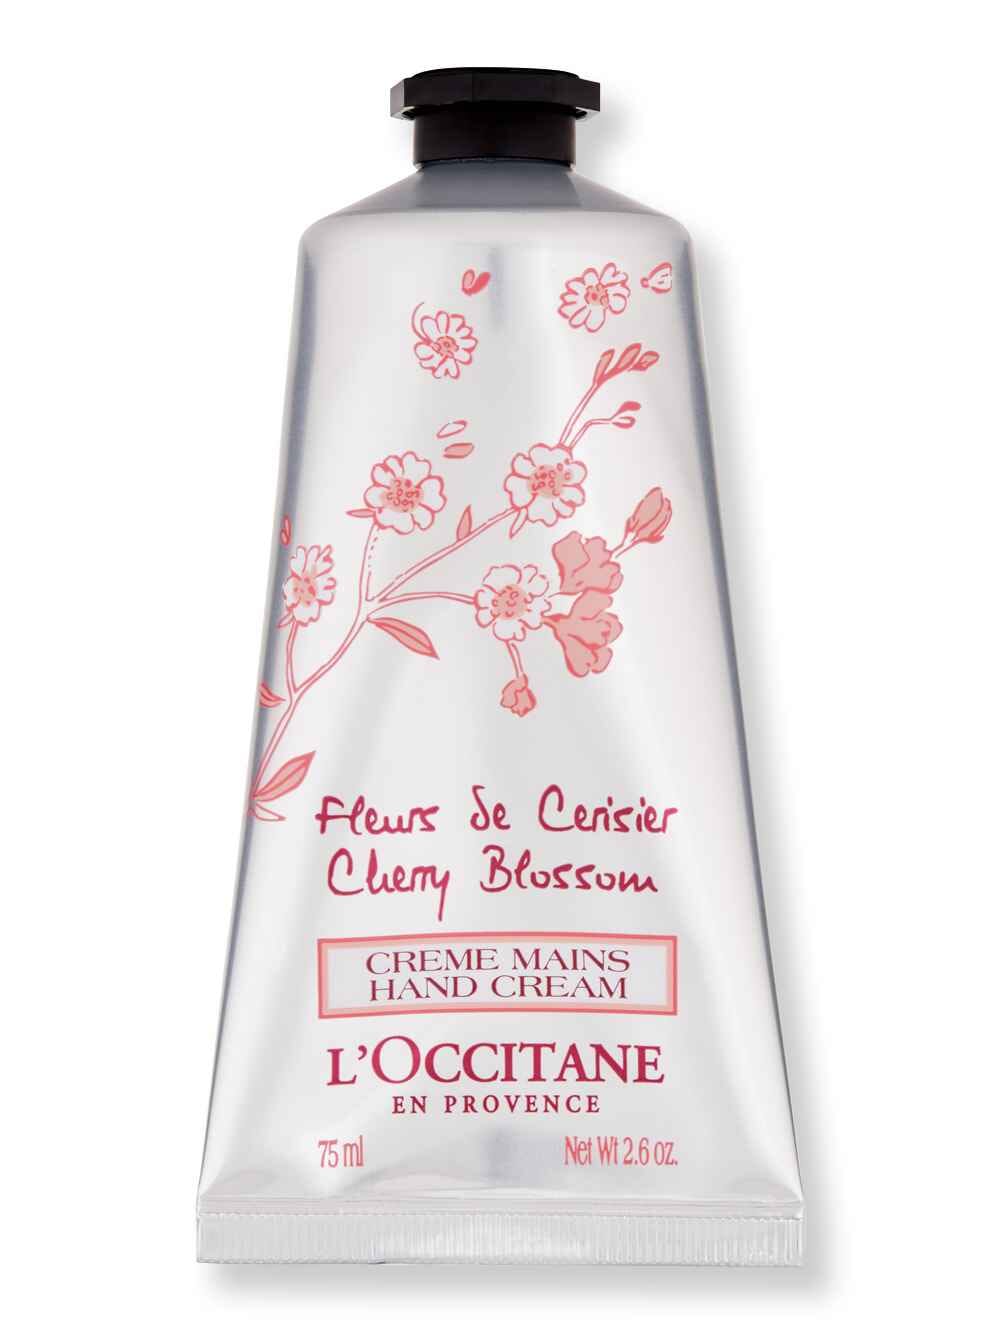 L'Occitane L'Occitane Cherry Blossom Hand Cream 2.6 oz75 ml Hand Creams & Lotions 